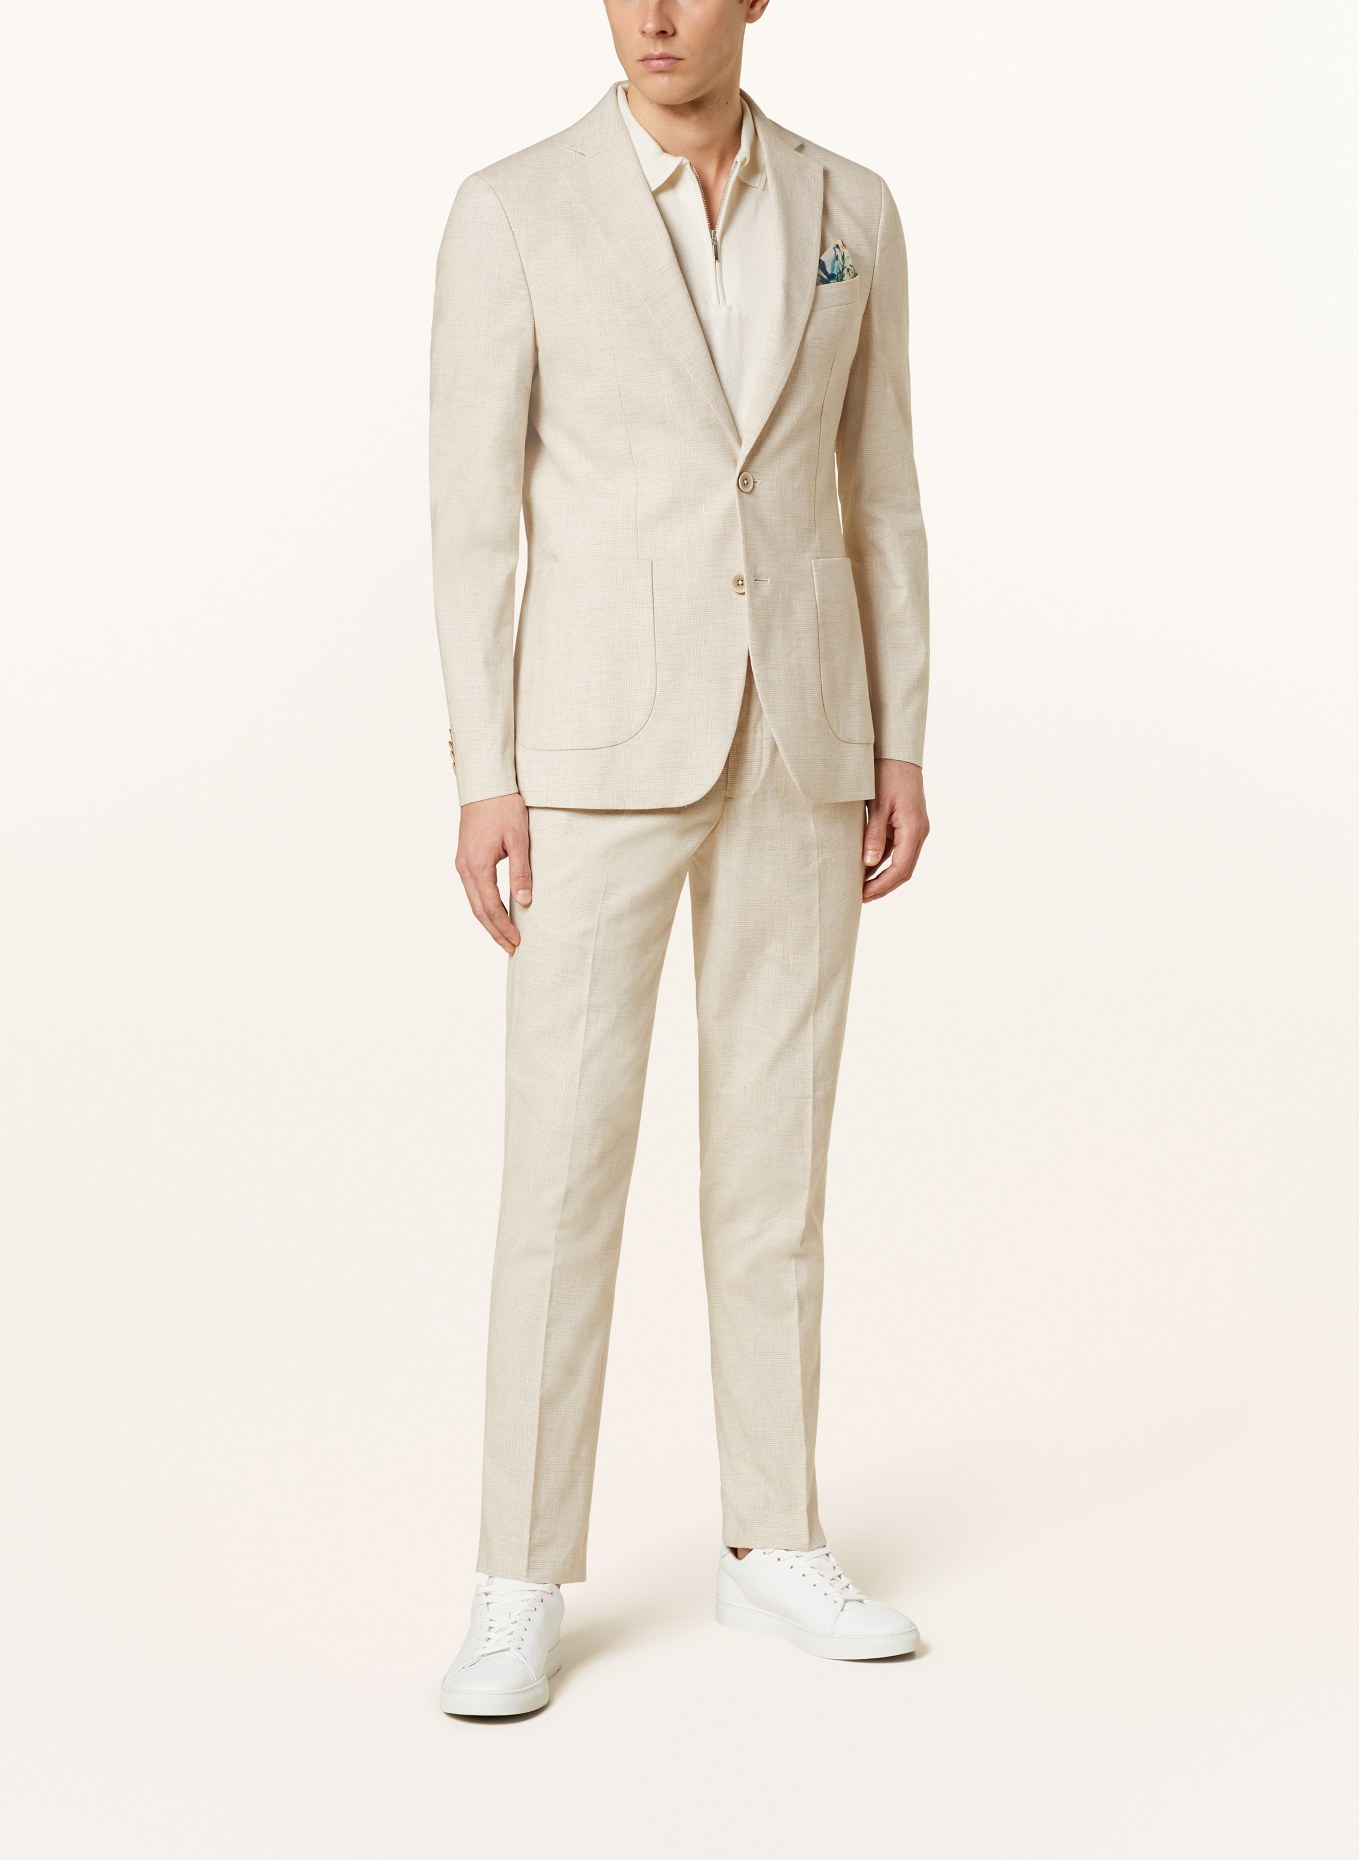 PAUL Suit jacket Slim Fit, Color: 210 Light Beige Check (Image 2)